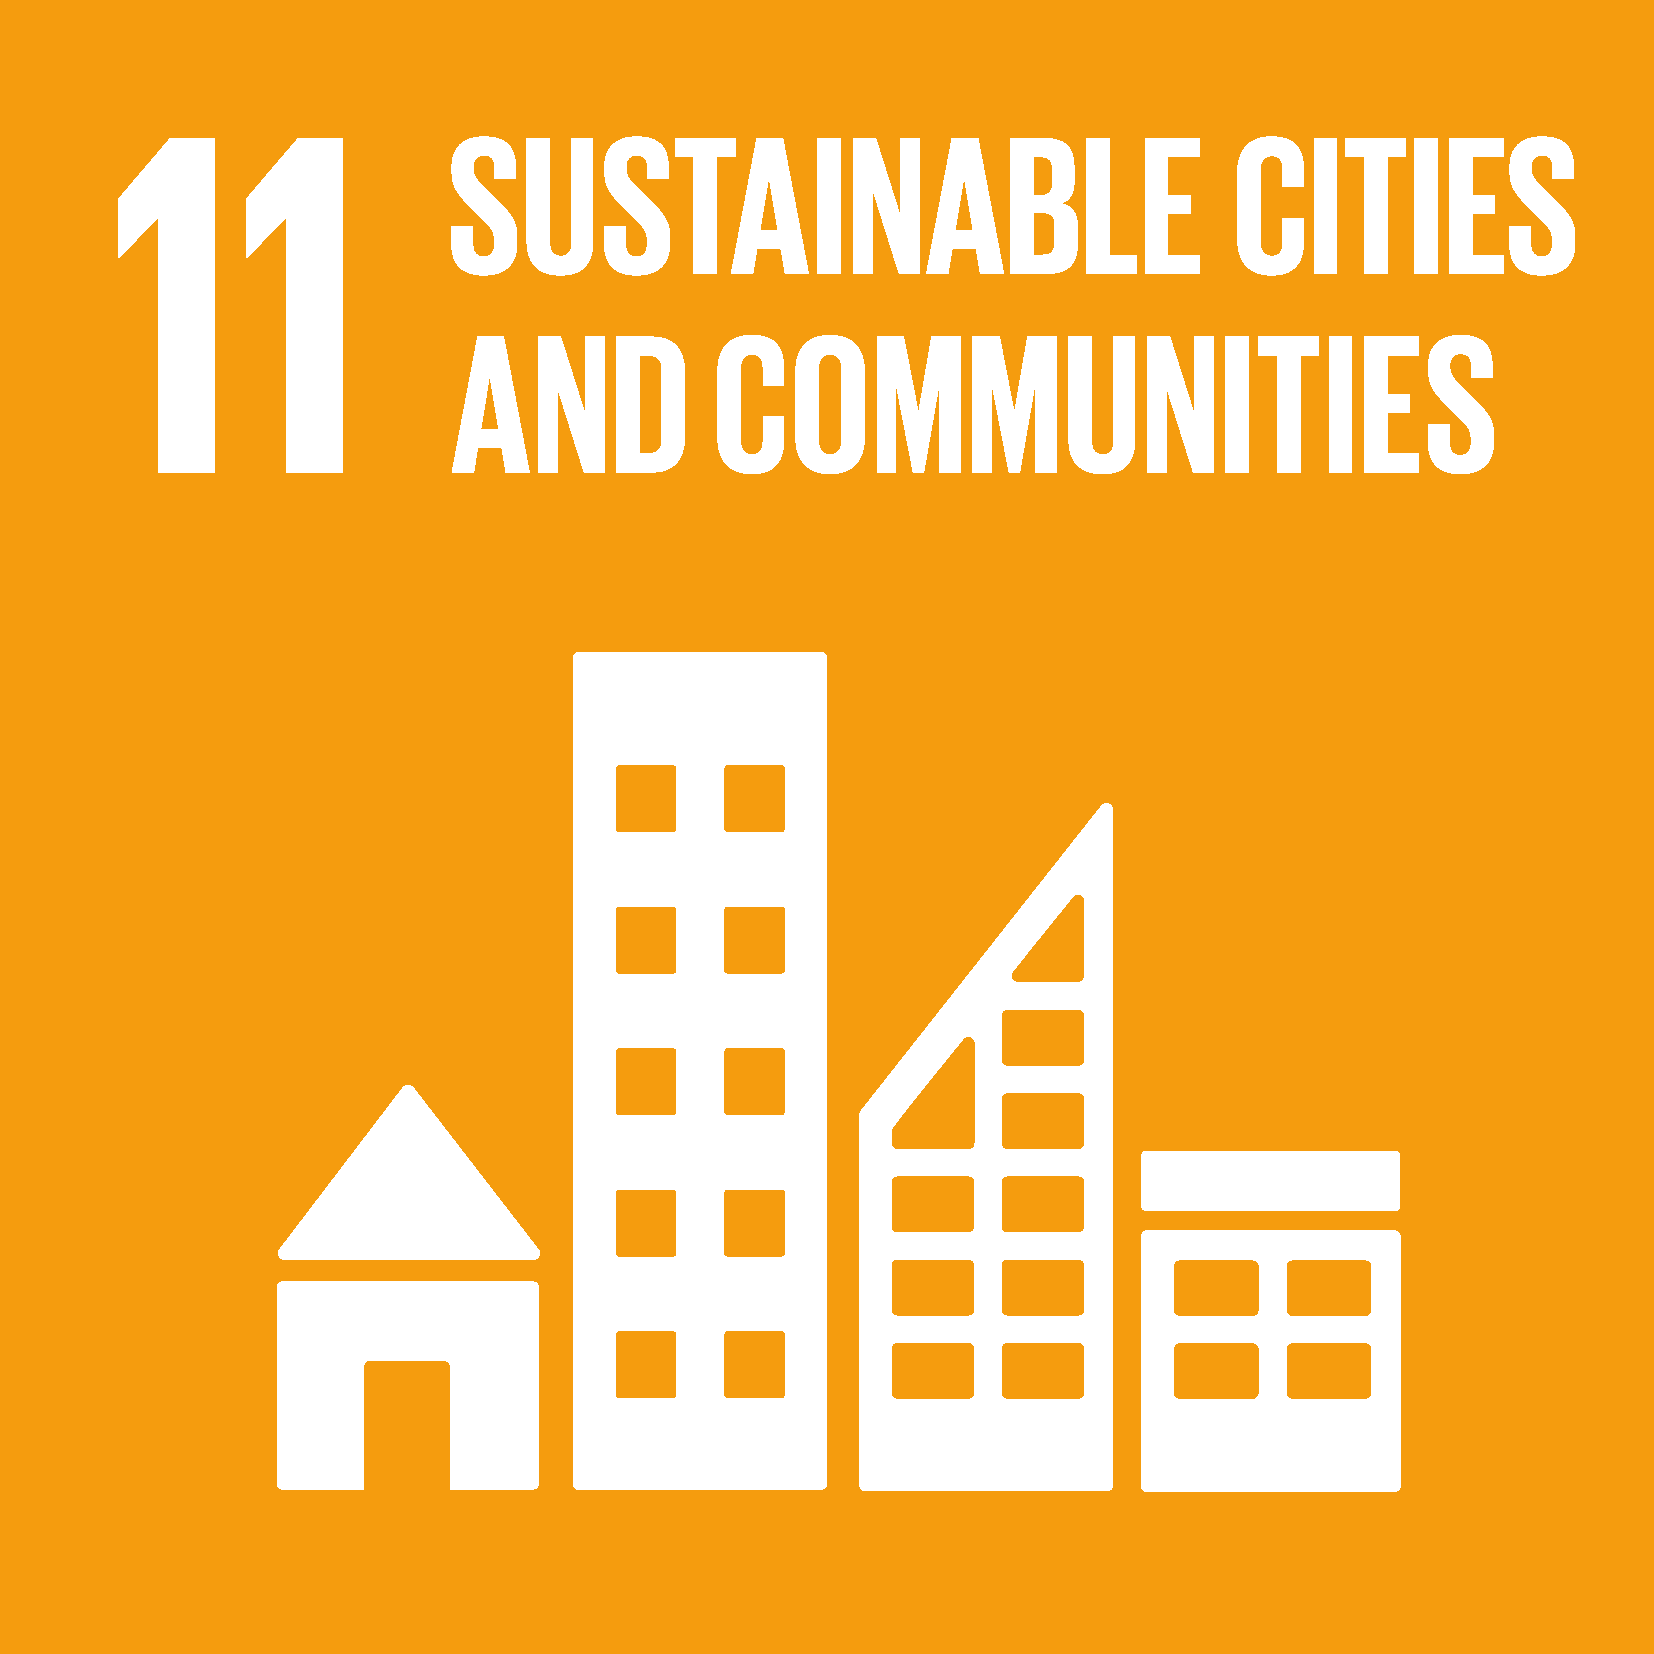 Bæredygtige byer og lokalsamfund